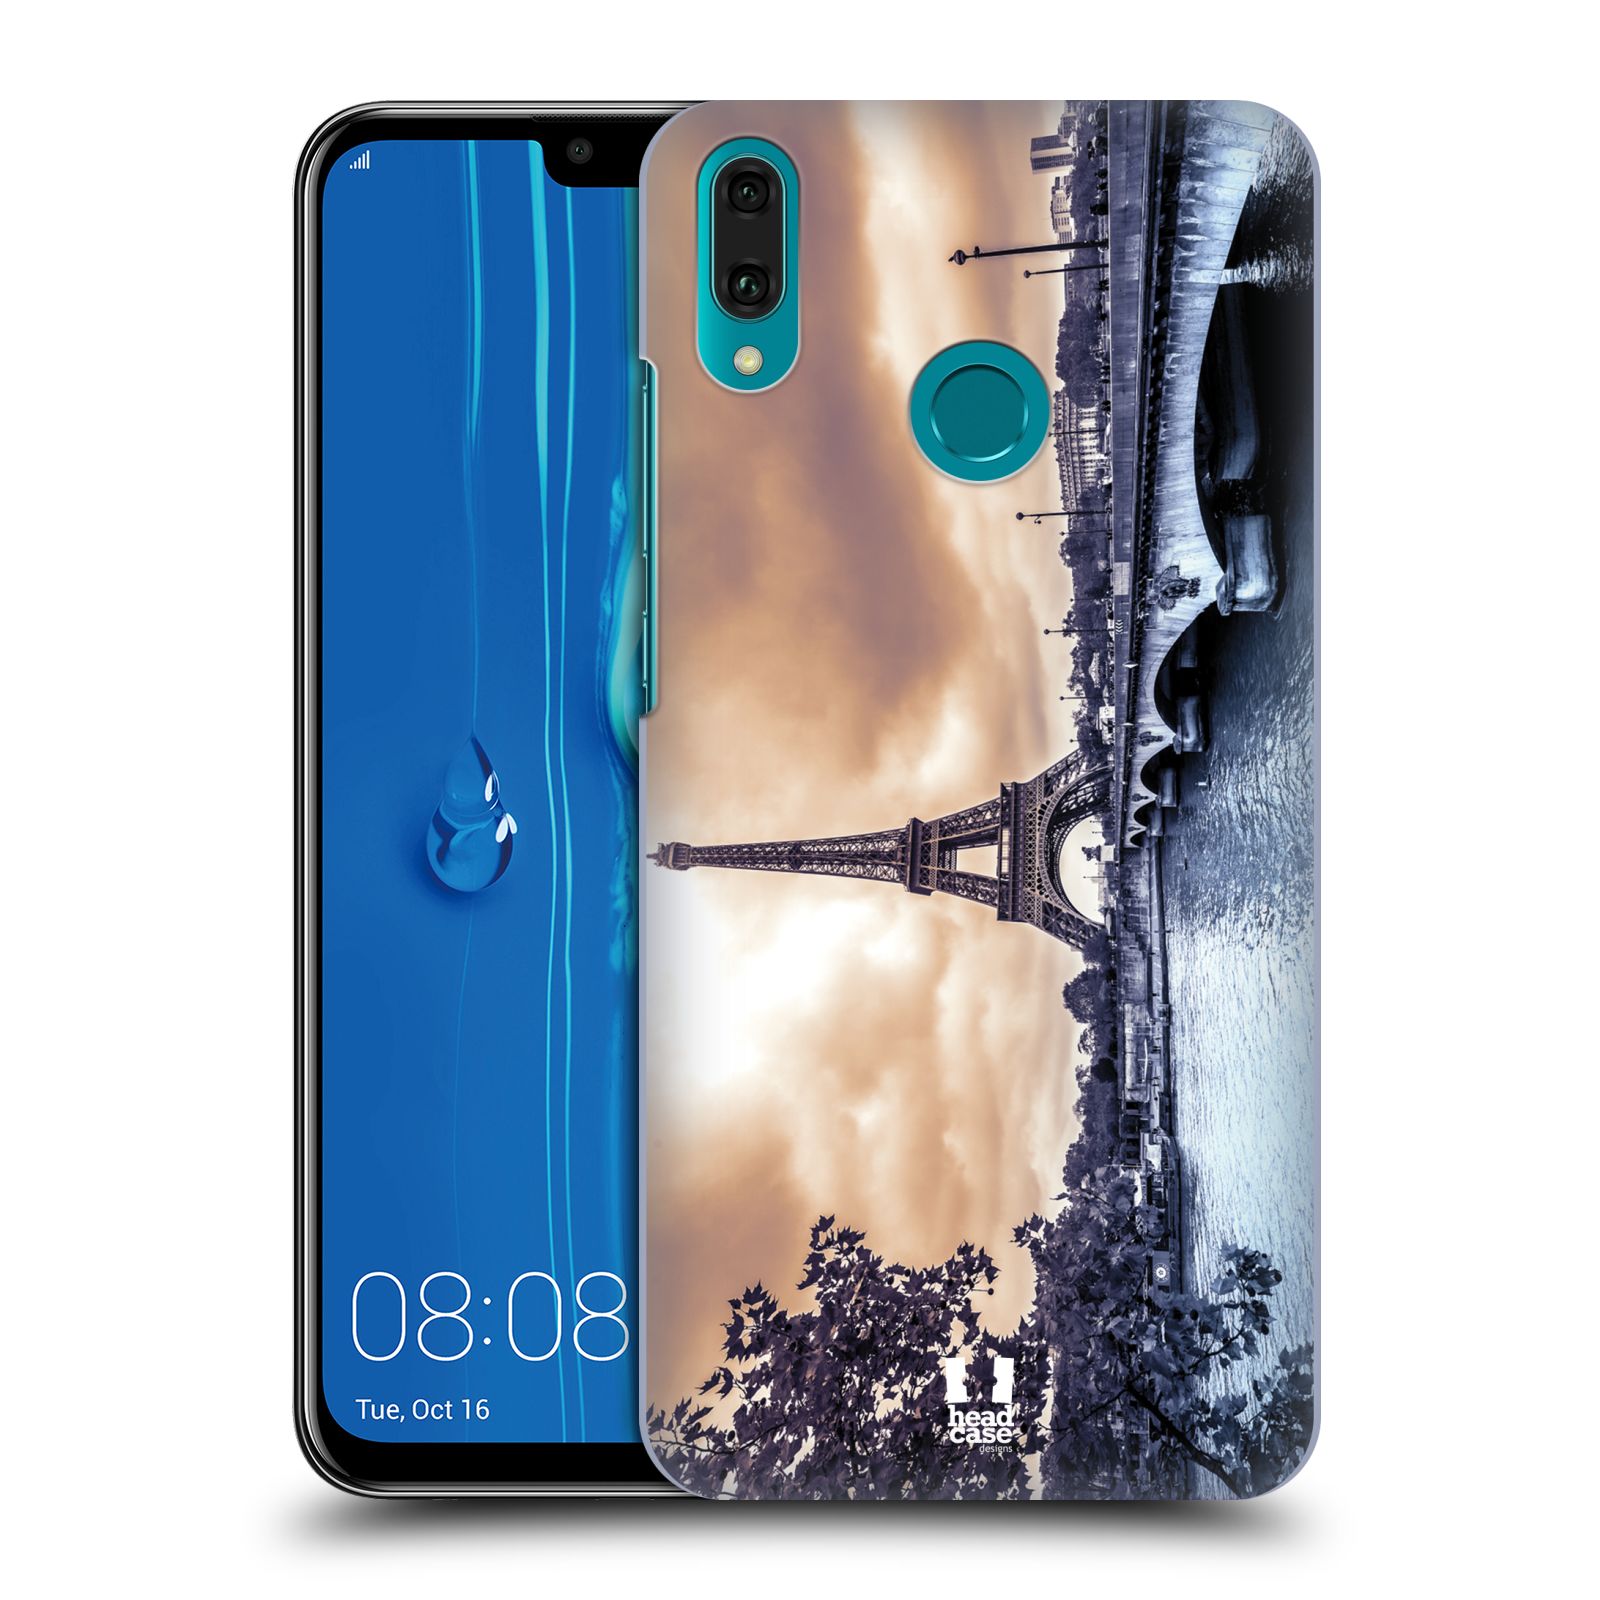 Pouzdro na mobil Huawei Y9 2019 - HEAD CASE - vzor Panoramata měst horizontální foto DEŠTIVÝ DEN V PAŘÍŽI, FRANCIE